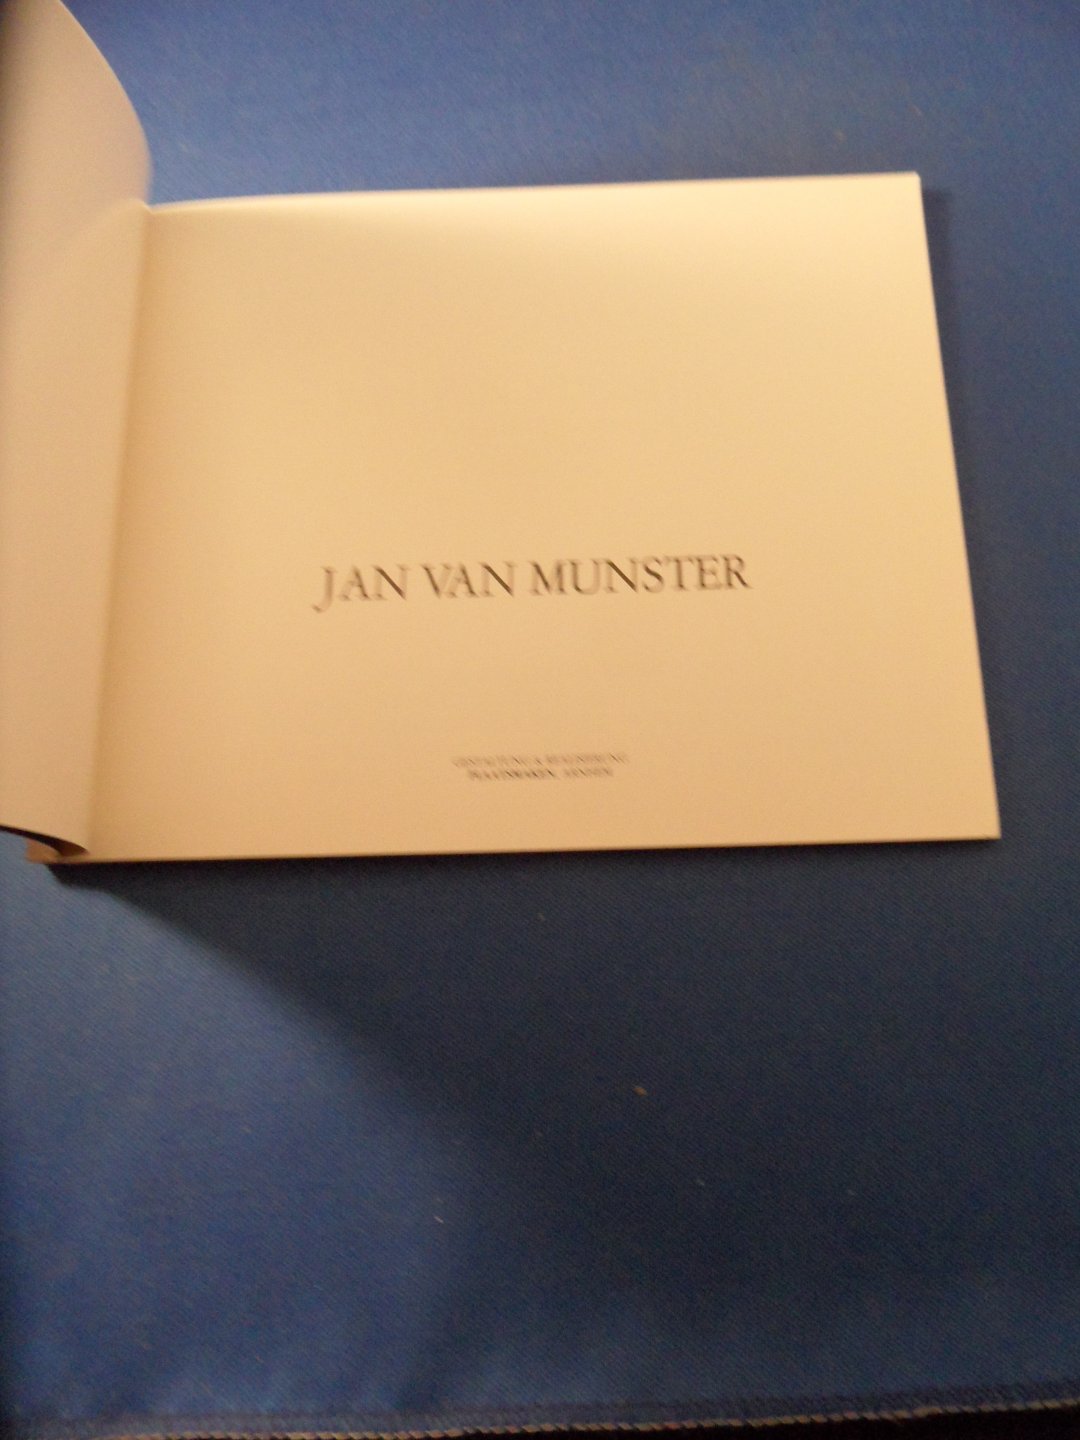 Munster, Jan van - Jan van Munster: Energie objecten. Zeichnungen. Tekeningen